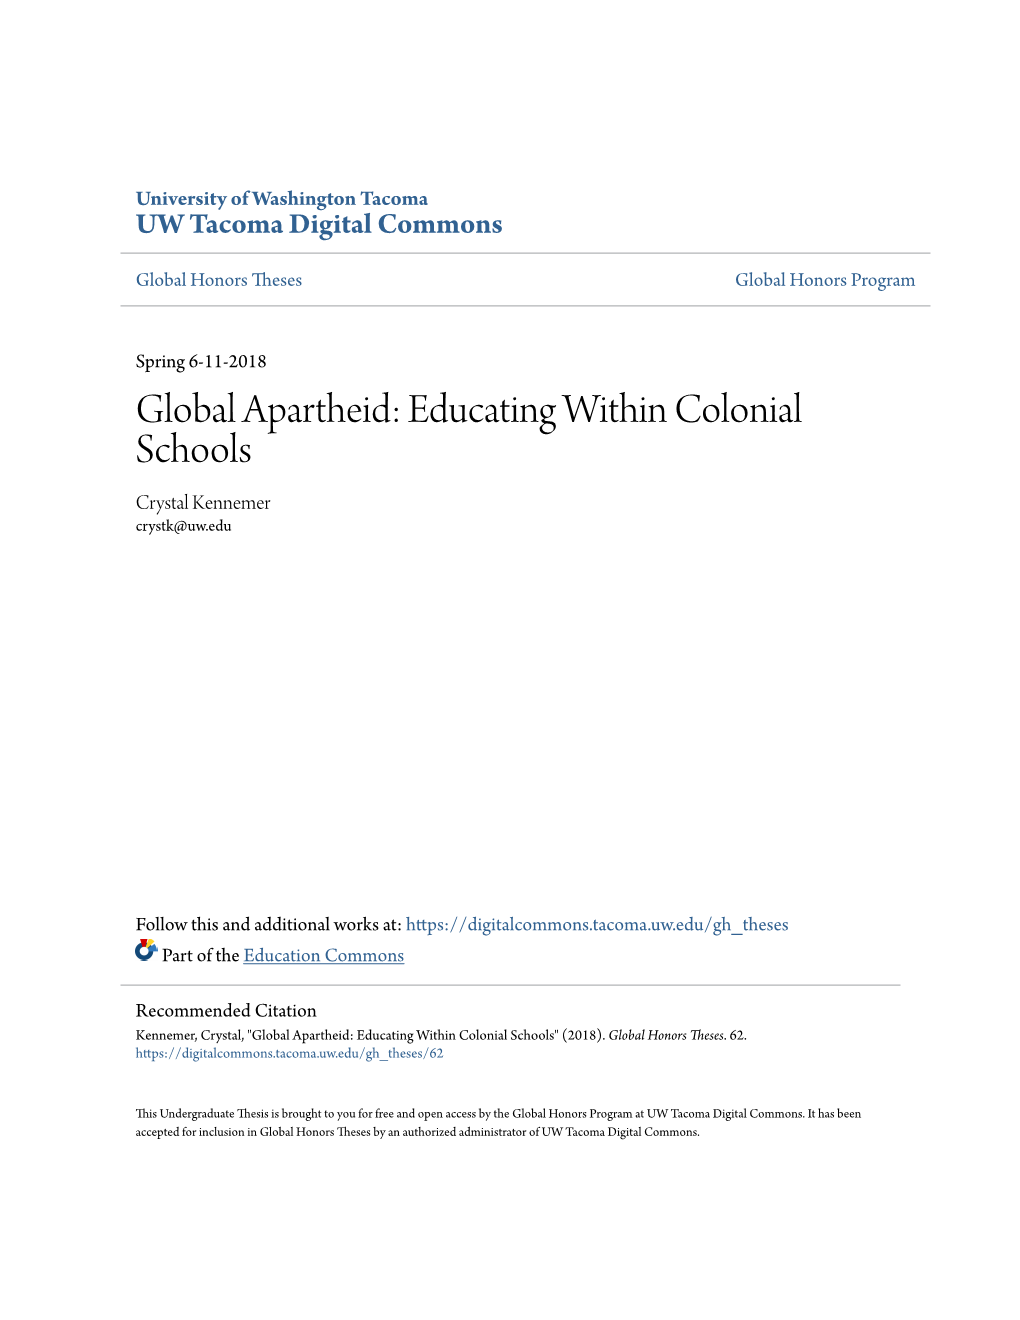 Global Apartheid: Educating Within Colonial Schools Crystal Kennemer Crystk@Uw.Edu